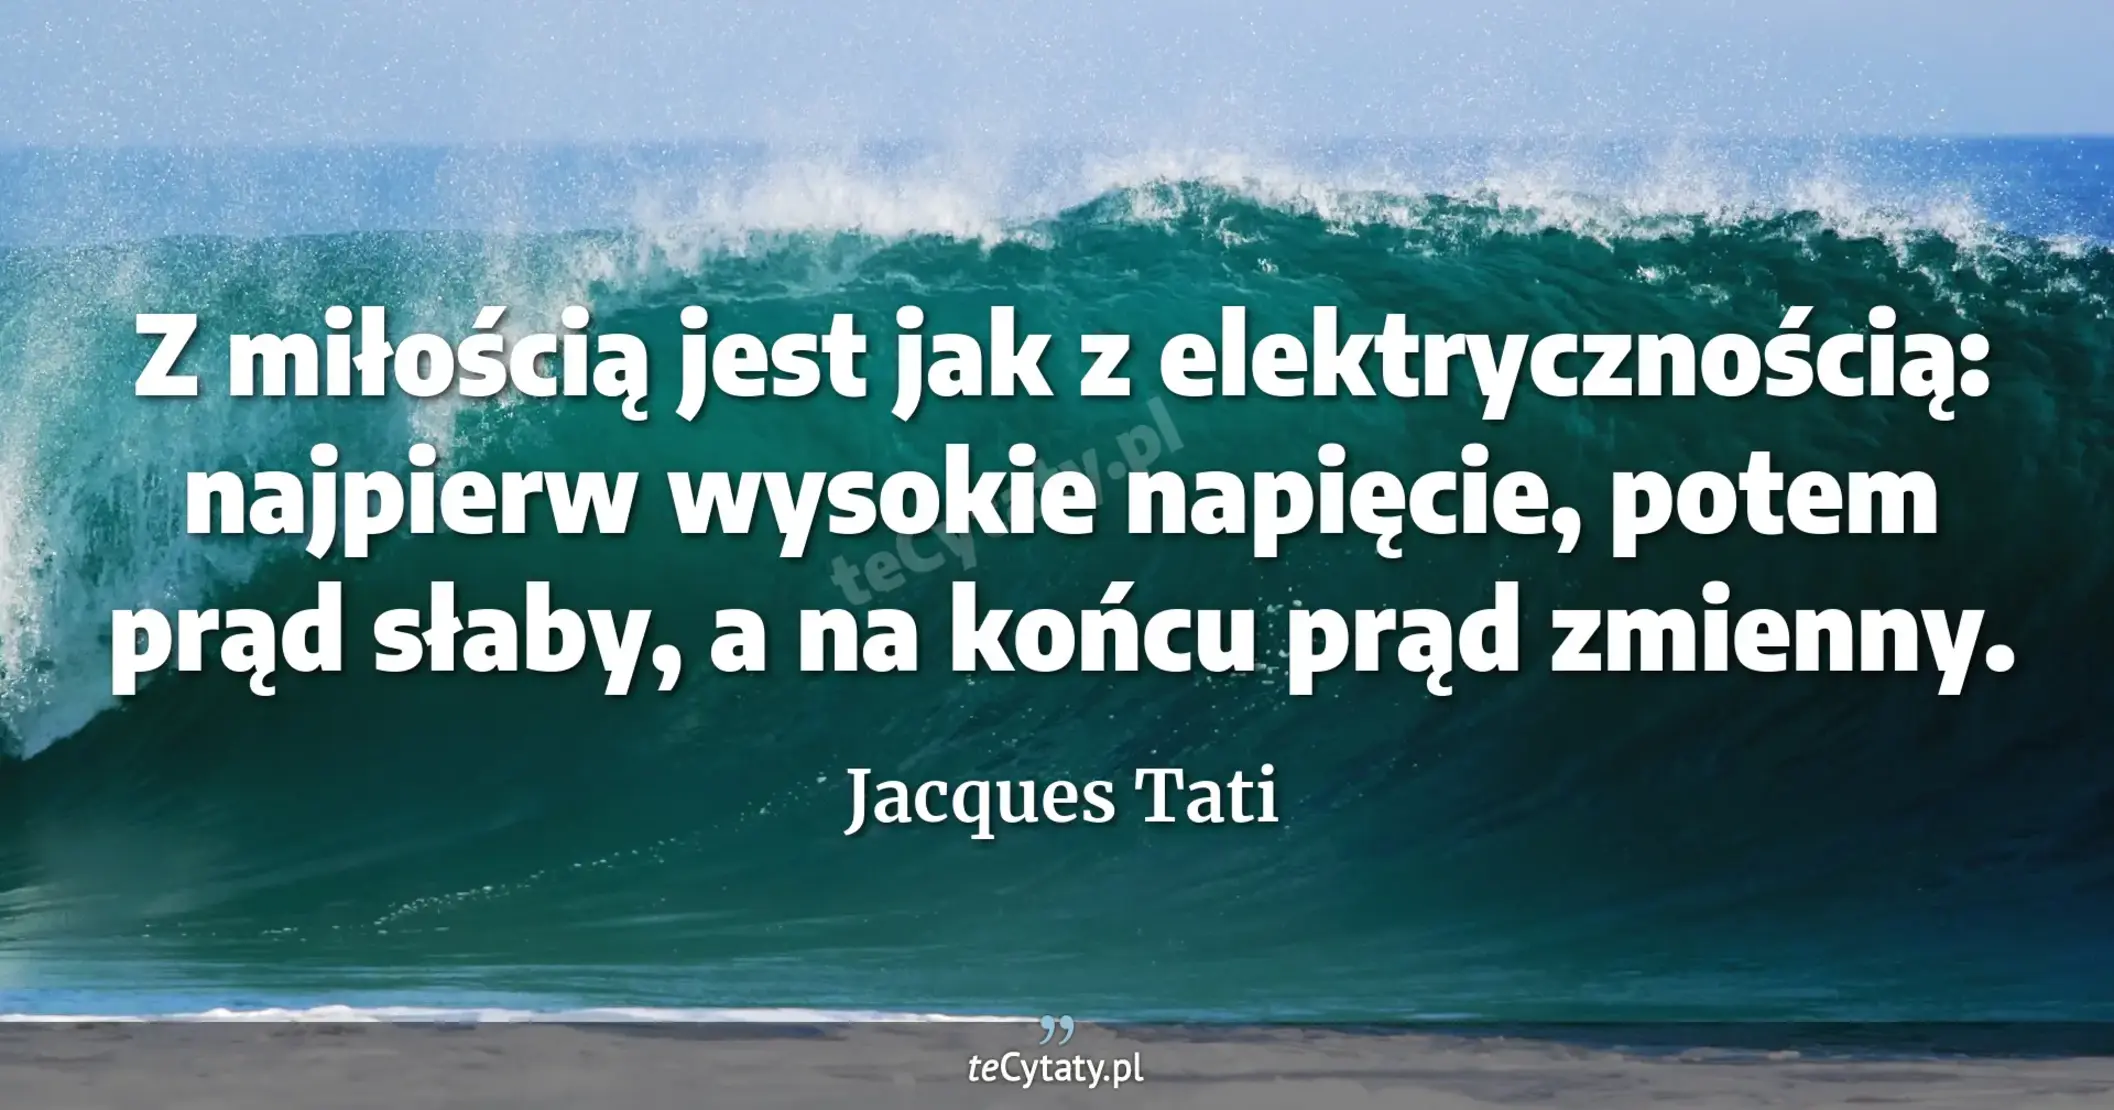 Z miłością jest jak z elektrycznością: najpierw wysokie napięcie, potem prąd słaby, a na końcu prąd zmienny. - Jacques Tati